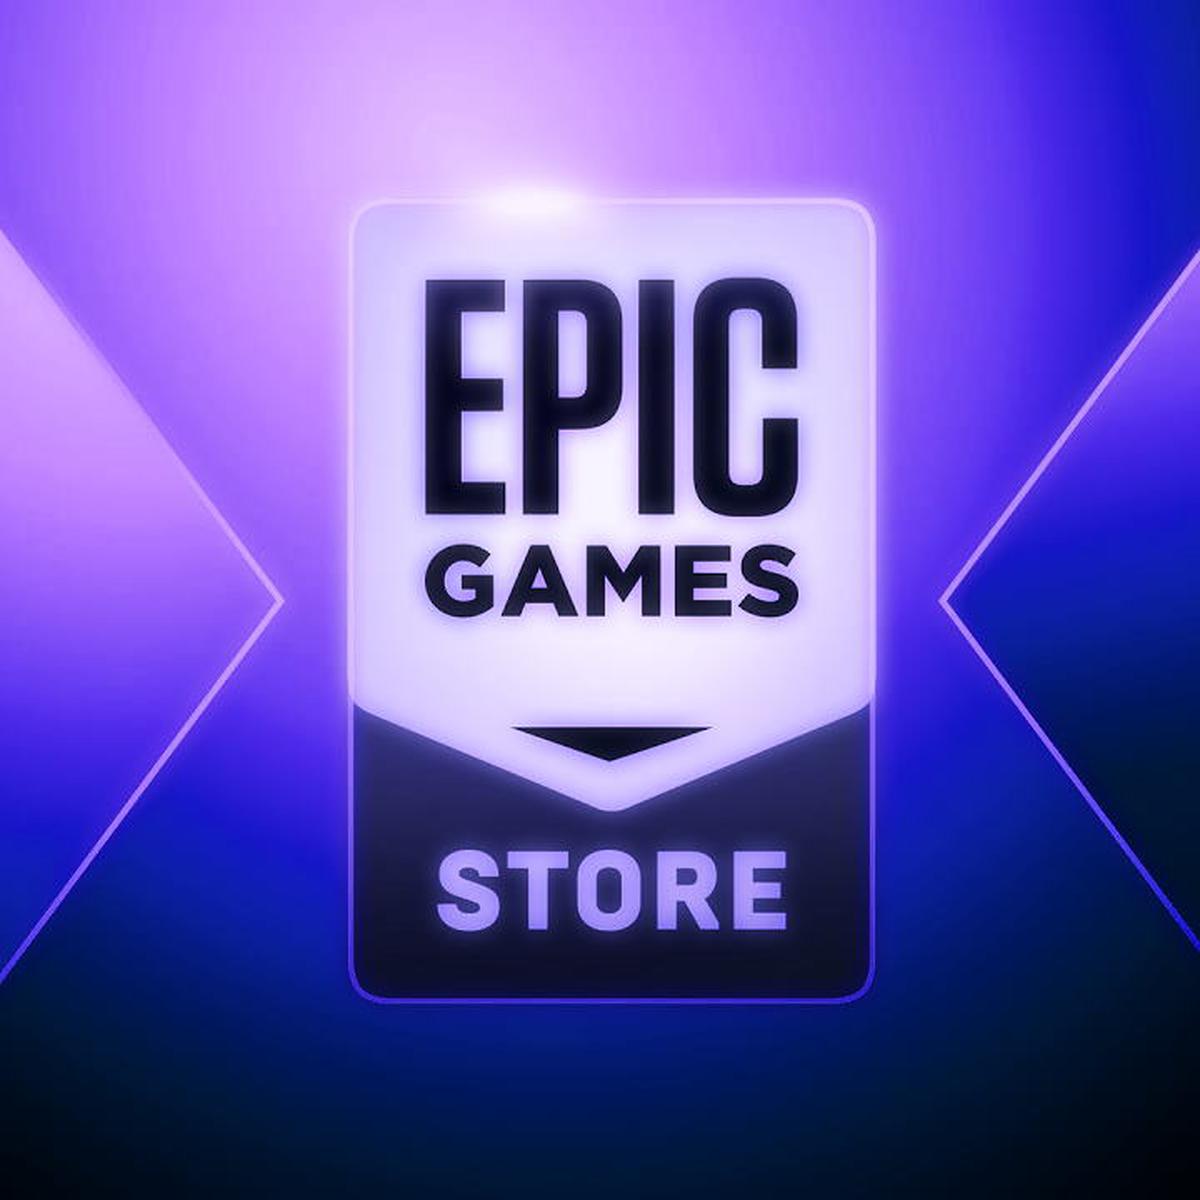 Supraland es el nuevo juego para descargar gratis en Epic Games